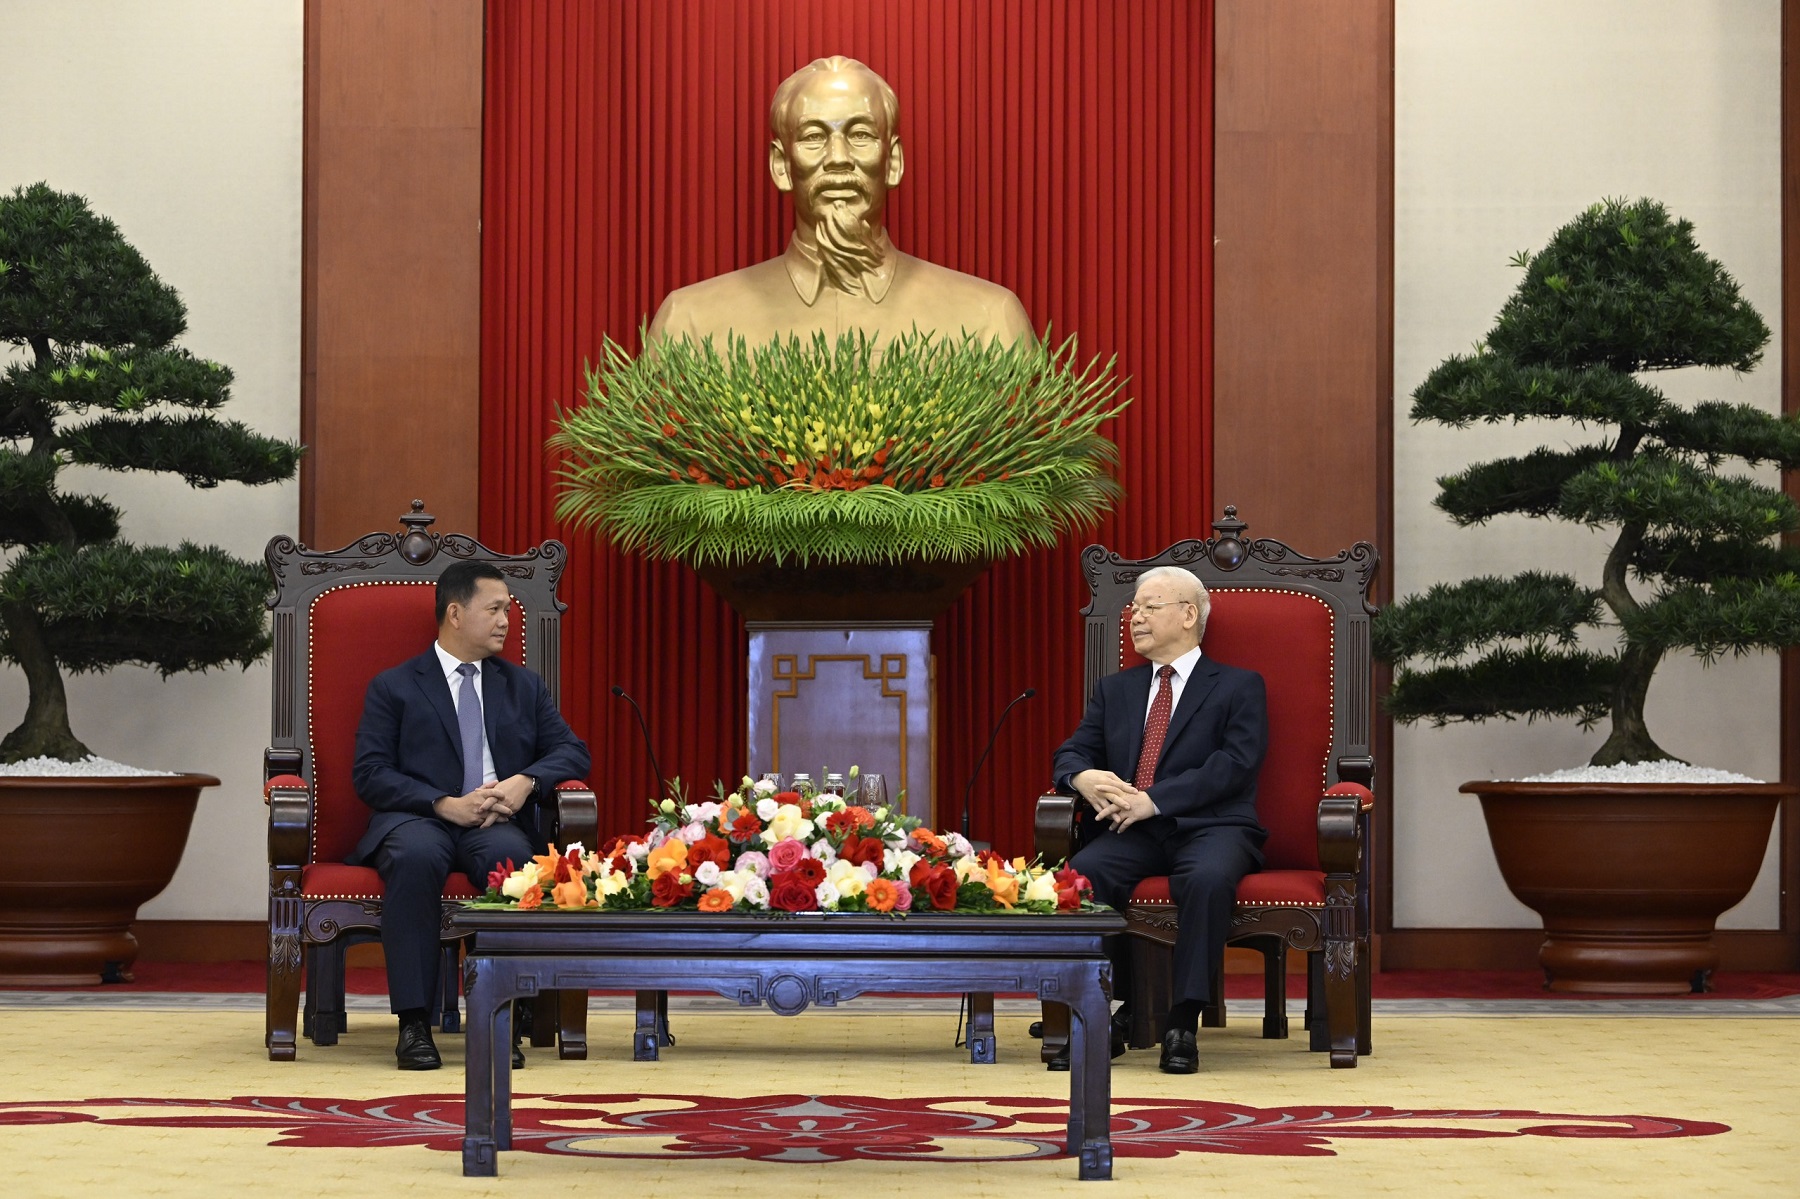 Tổng Bí thư Nguyễn Phú Trọng đánh giá cao chuyến thăm của Thủ tướng Hun Manet có ý nghĩa quan trọng, góp phần củng cố và tạo dấu ấn mới trong quan hệ Việt Nam - Campuchia. Ảnh: Tri Phong.